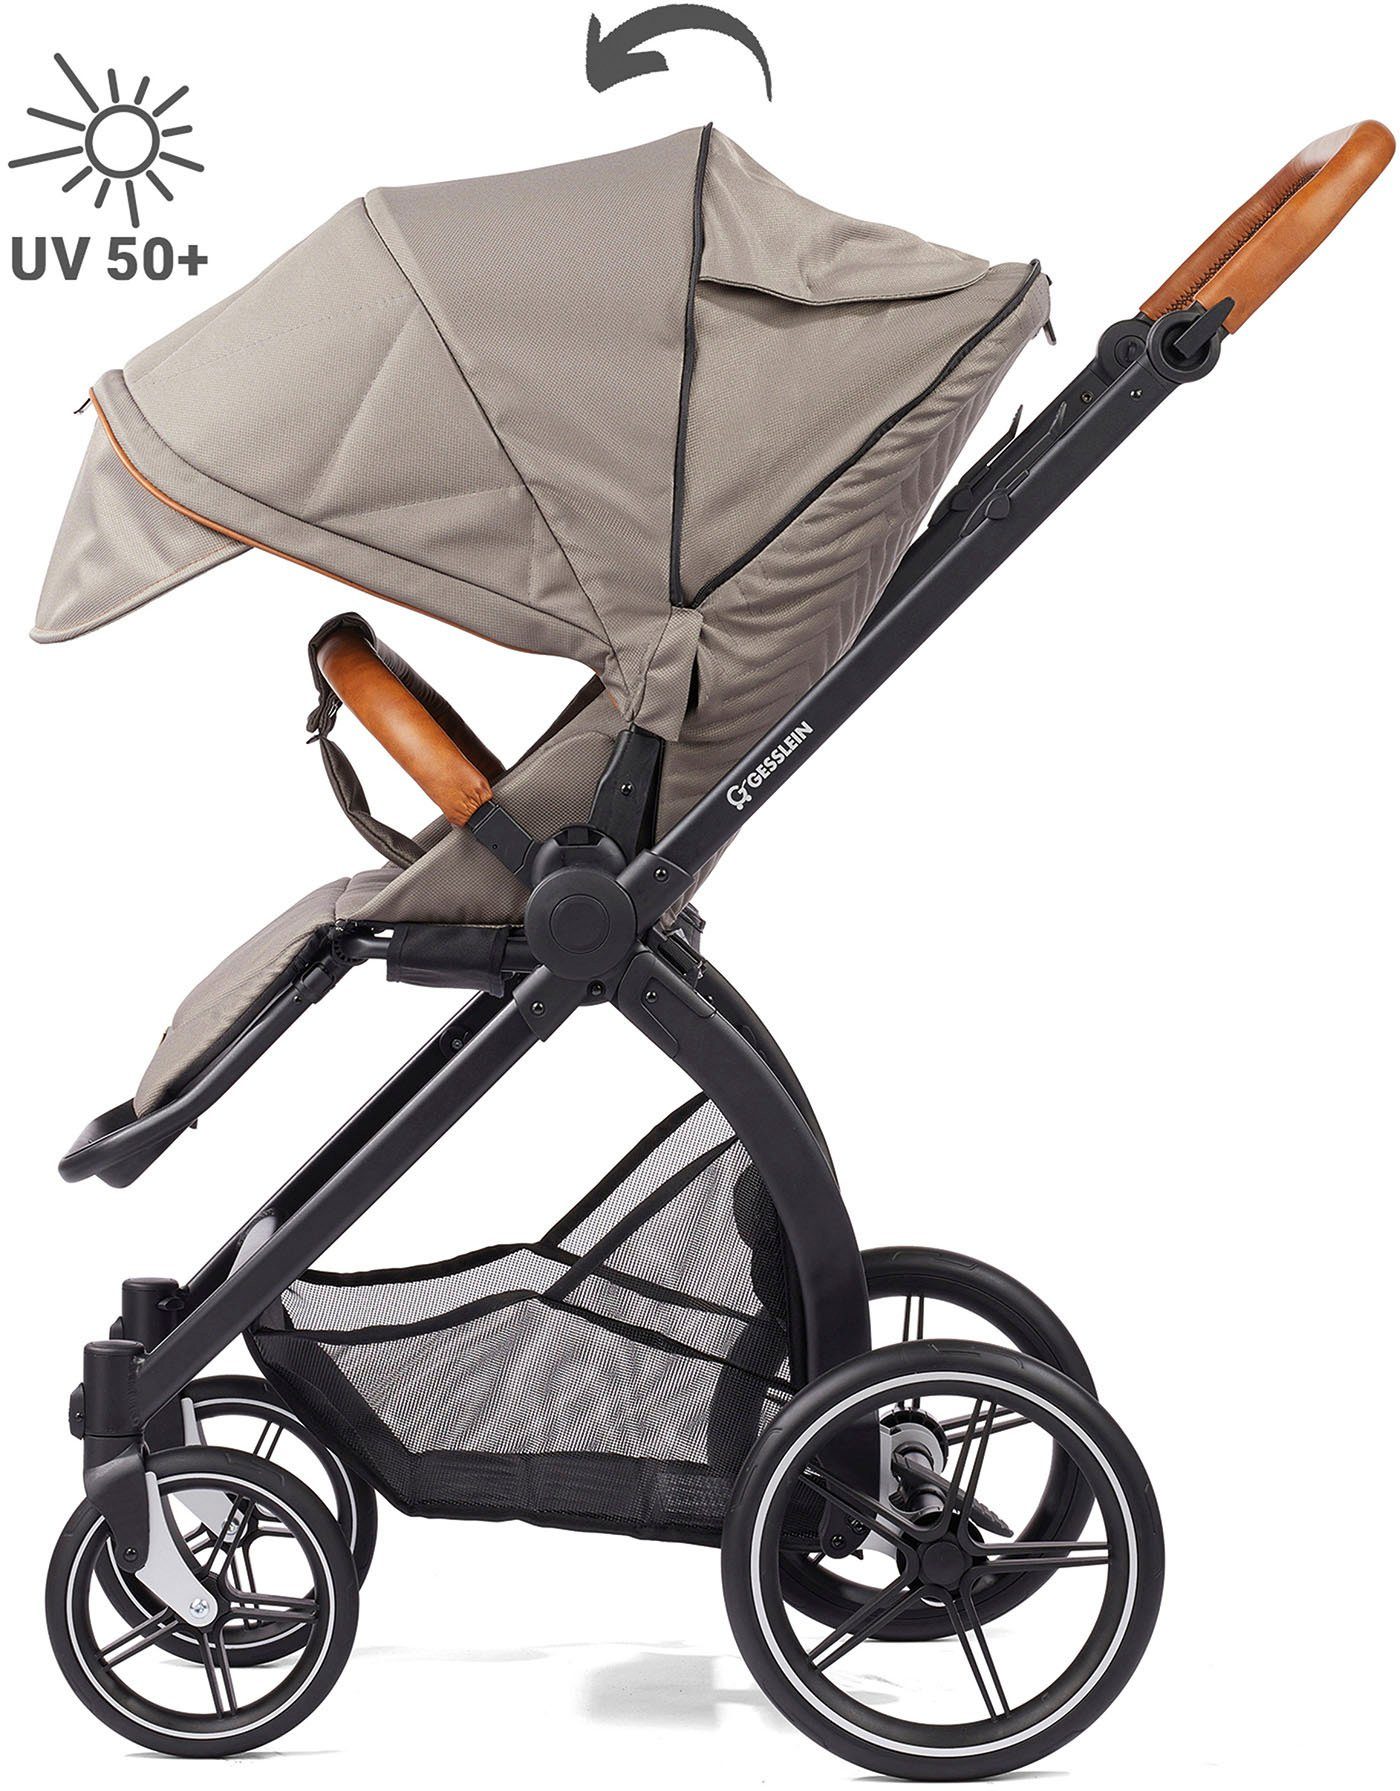 Gesslein Kombi-Kinderwagen FX4 mit und Soft+ Babywanne C3 taube/cognac, mit Aufsatz Babyschalenadapter Style